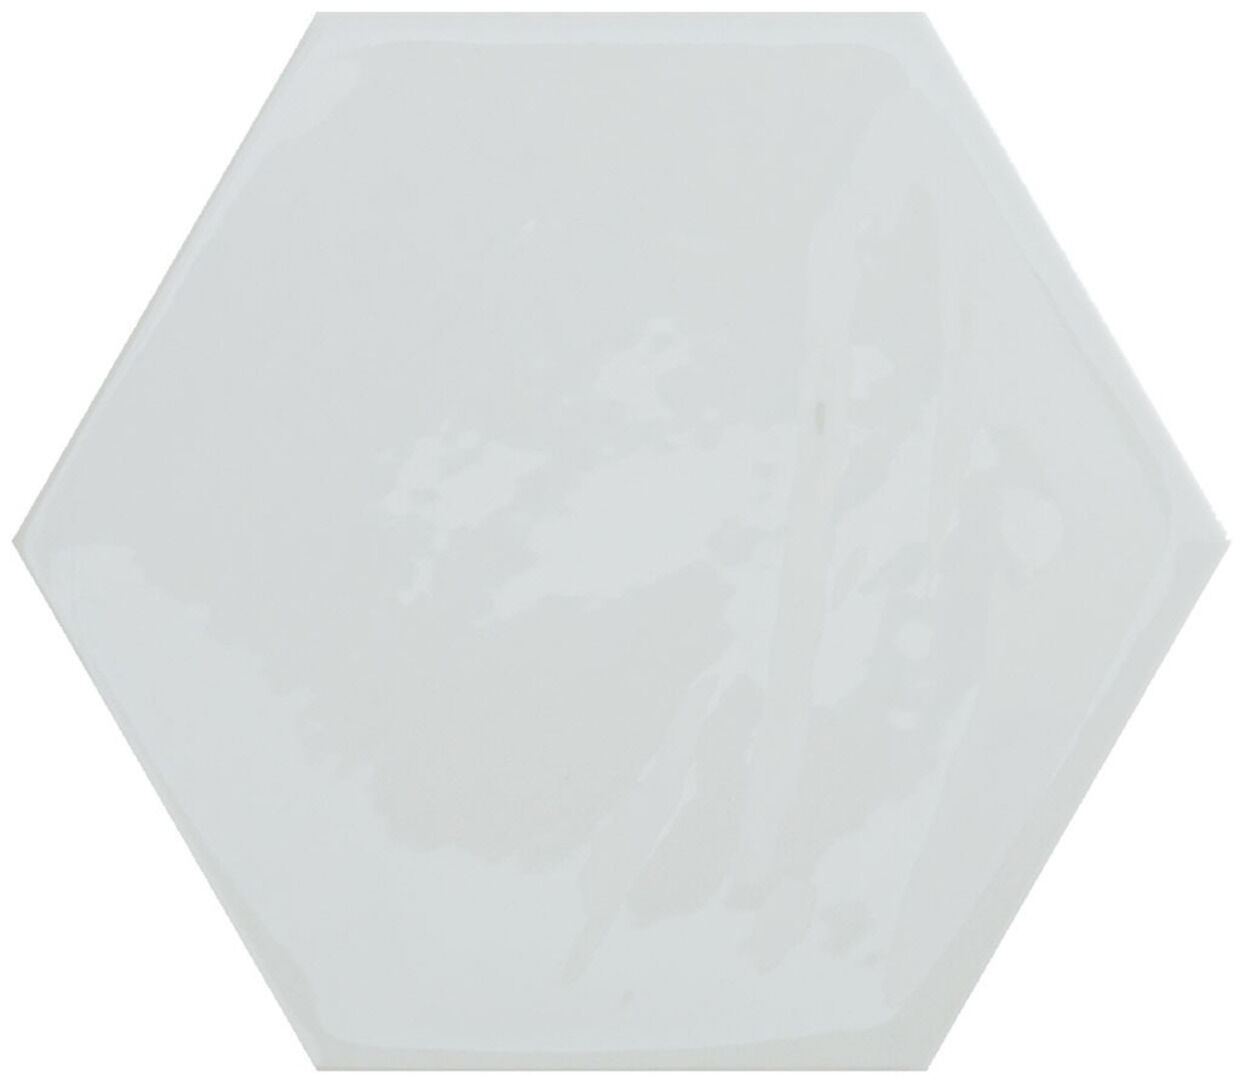 Керамическая плитка KANE HEXAGON WHITE 16*18 / коллекция KANE / производитель CIFRE CERAMICA / страна Испания